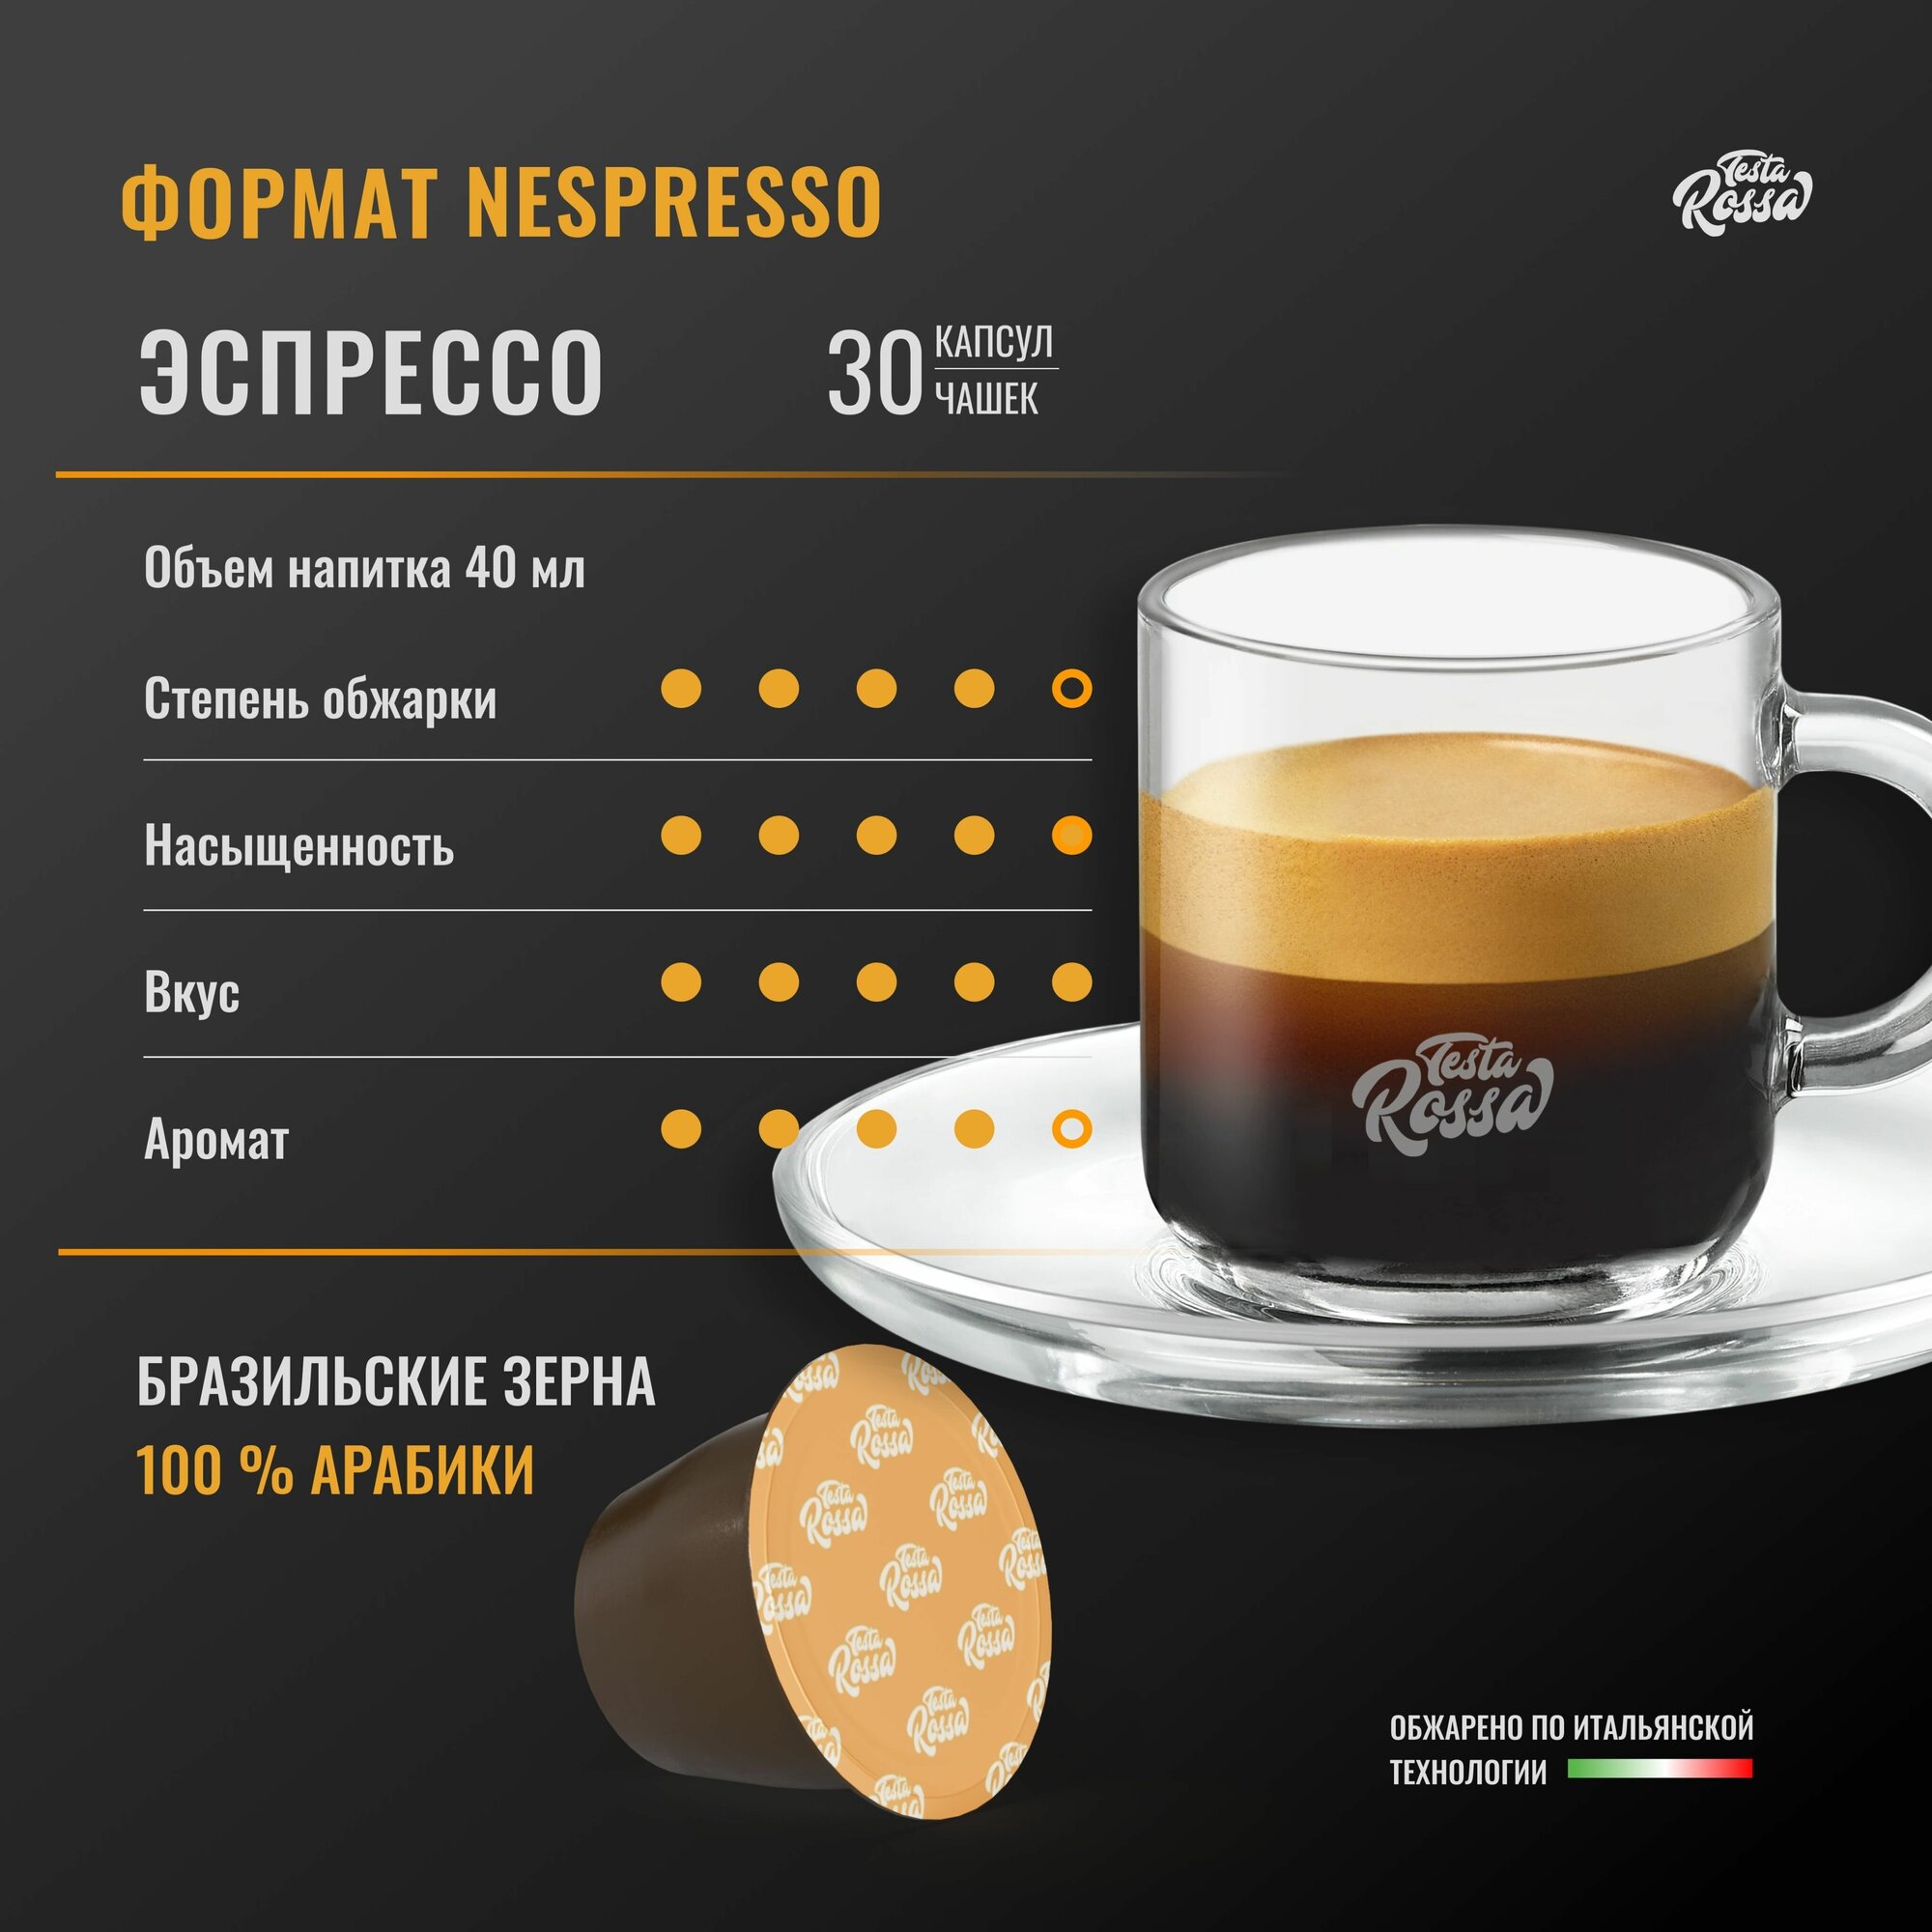 Эспрессо Арабика 100% - Капсулы Testa Rossa - 30 шт, набор кофе в капсулах неспрессо, для кофемашины NESPRESSO - фотография № 2